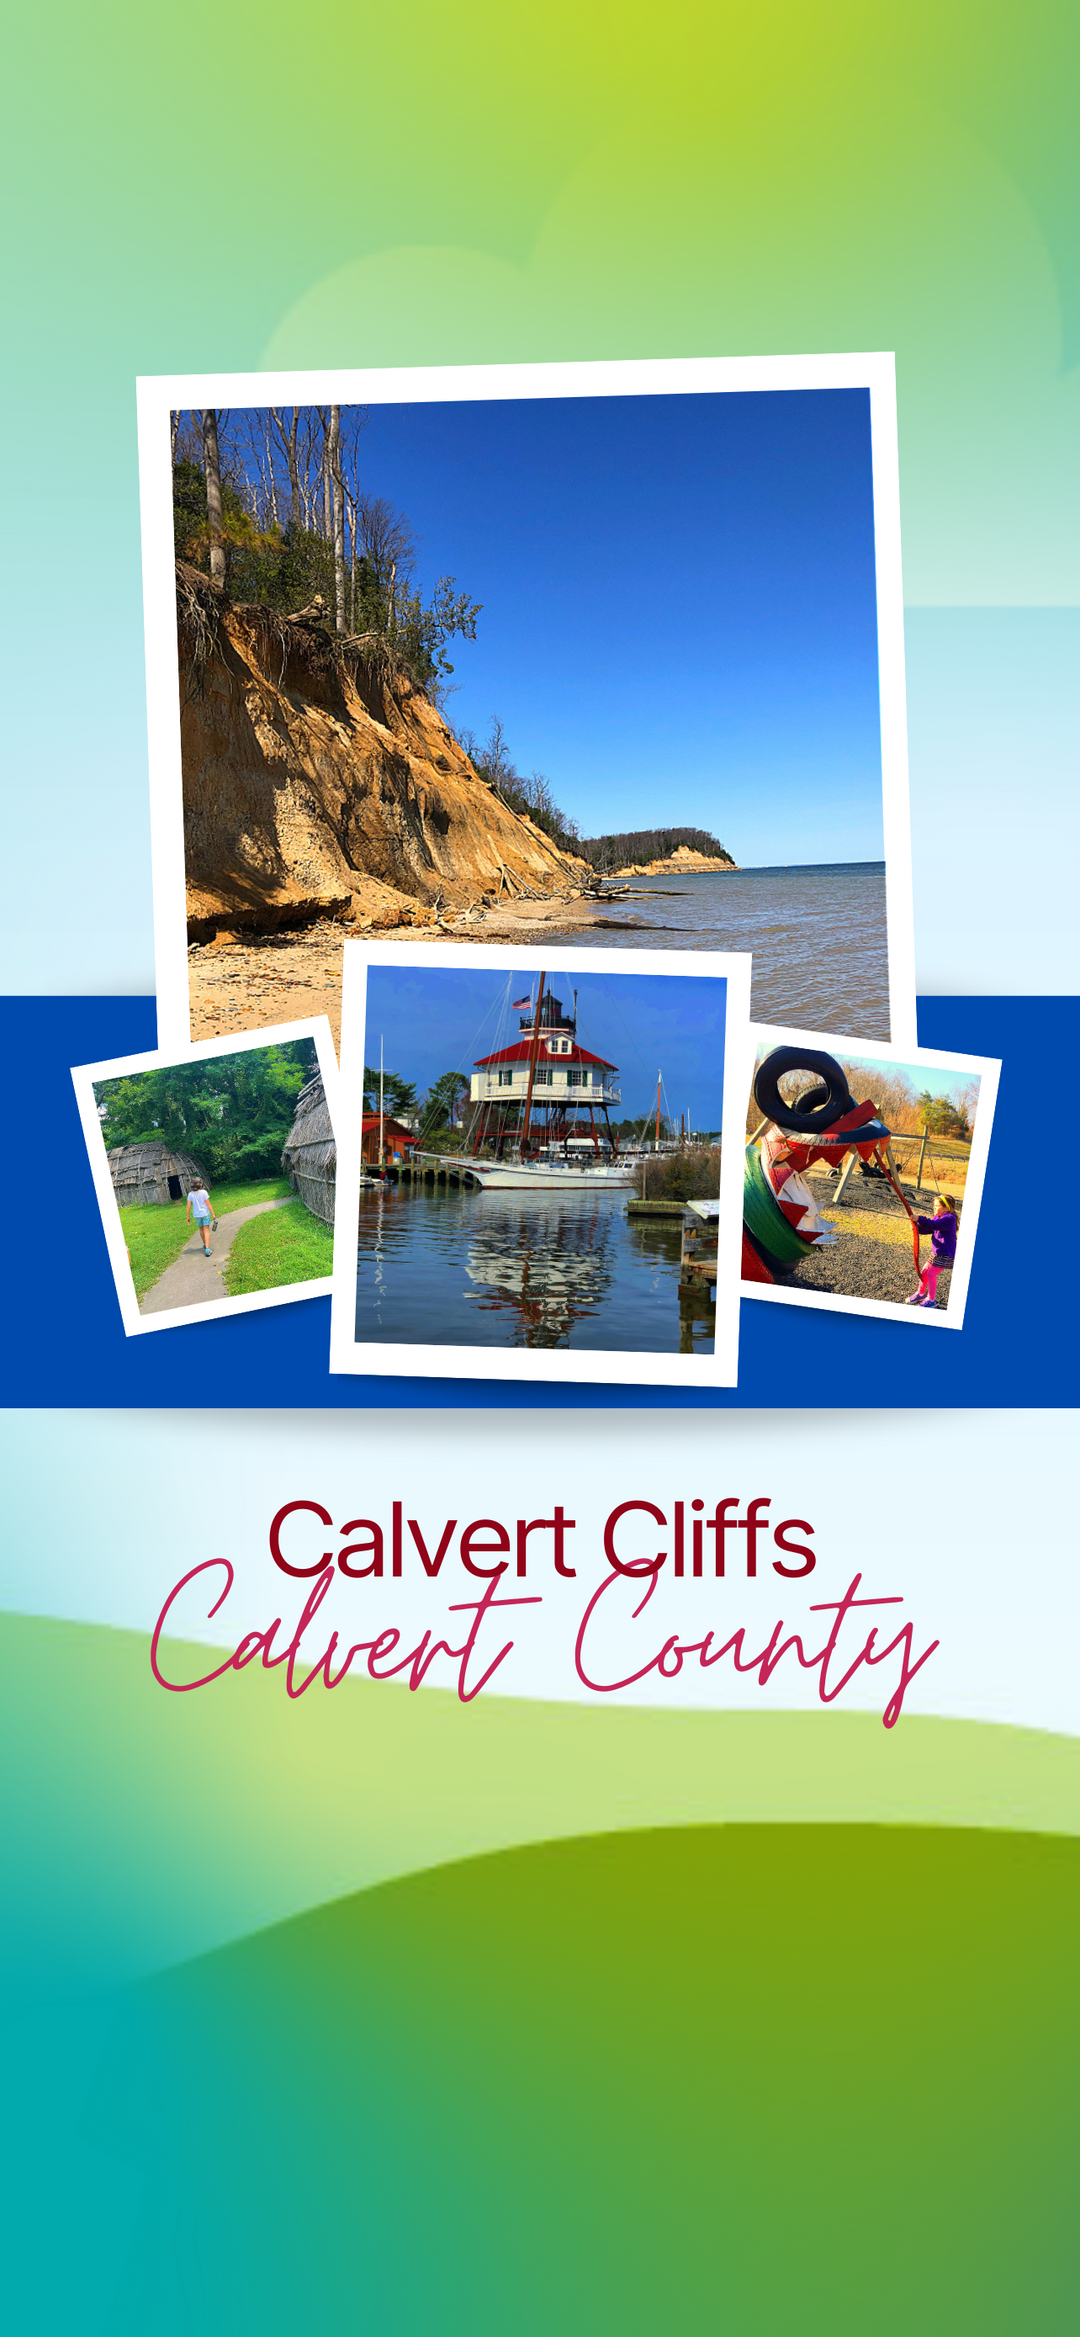 Calvert Cliffs Day Trip Itinerary